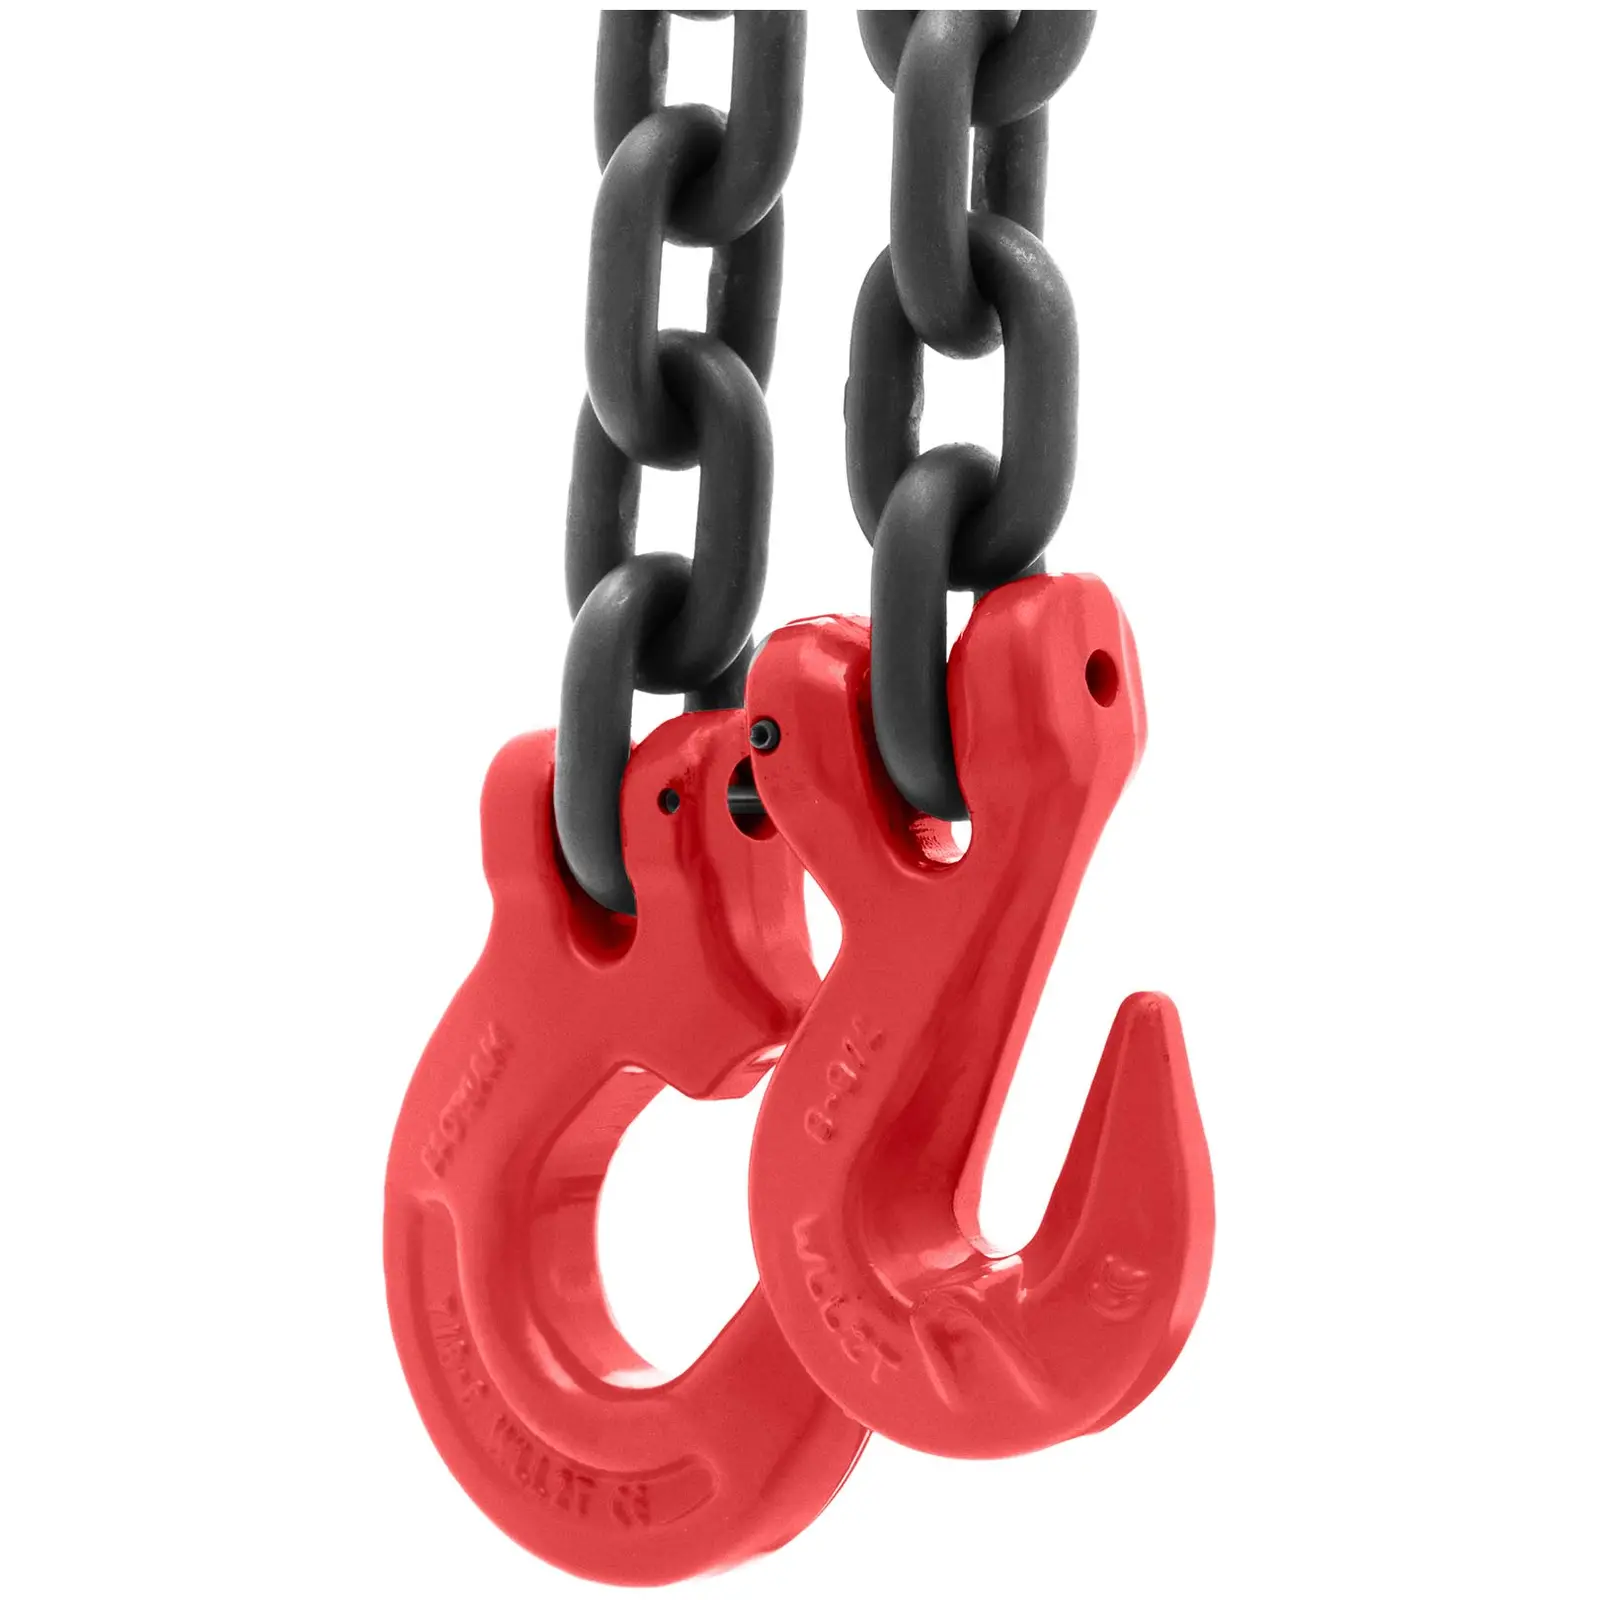 Kæde til ophæng - 2000 kg - 2,5 m - sort og rød